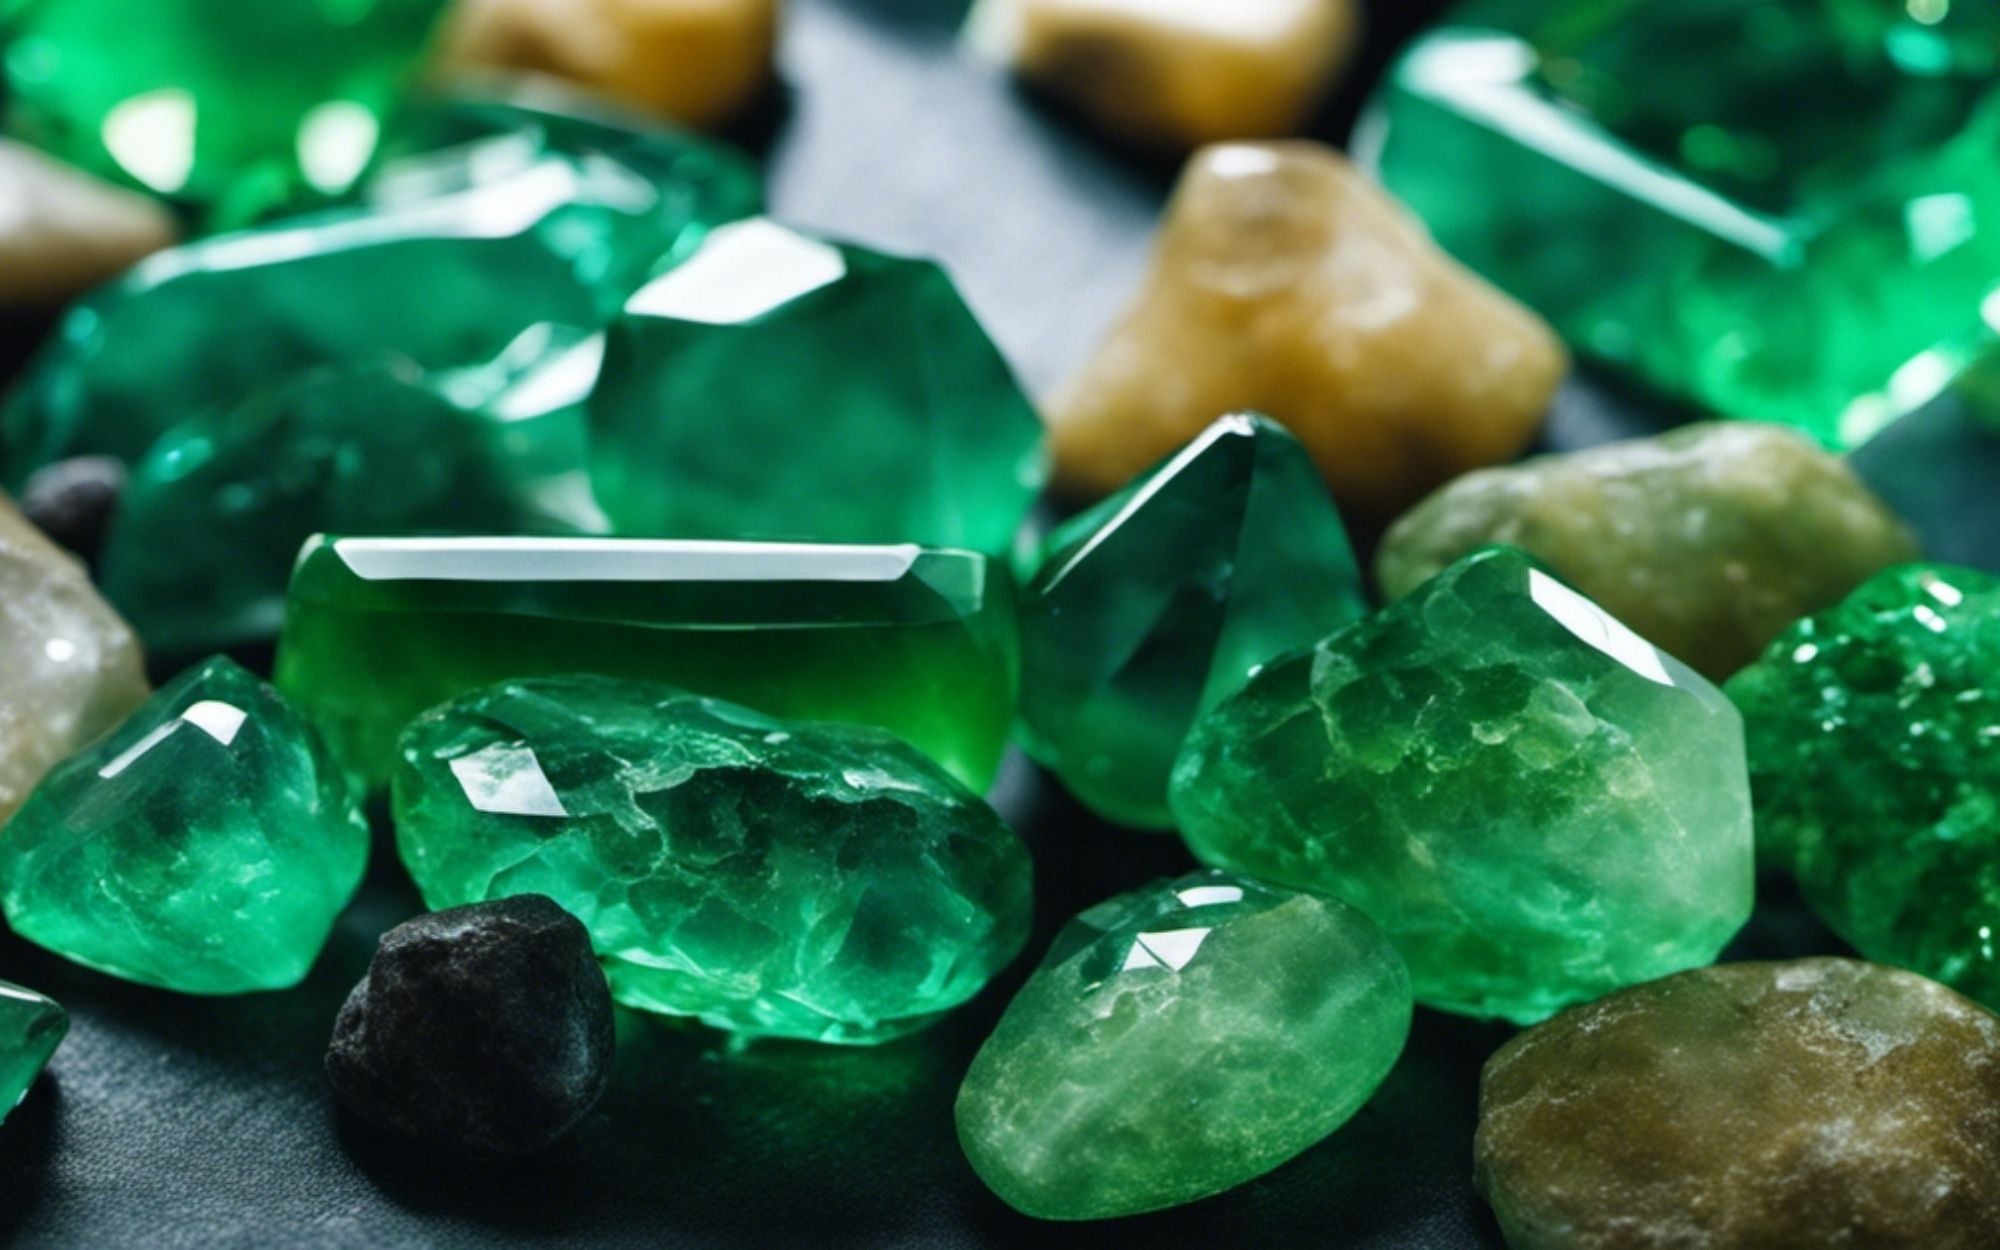 colores de cristal y sus significados - cristales verdes